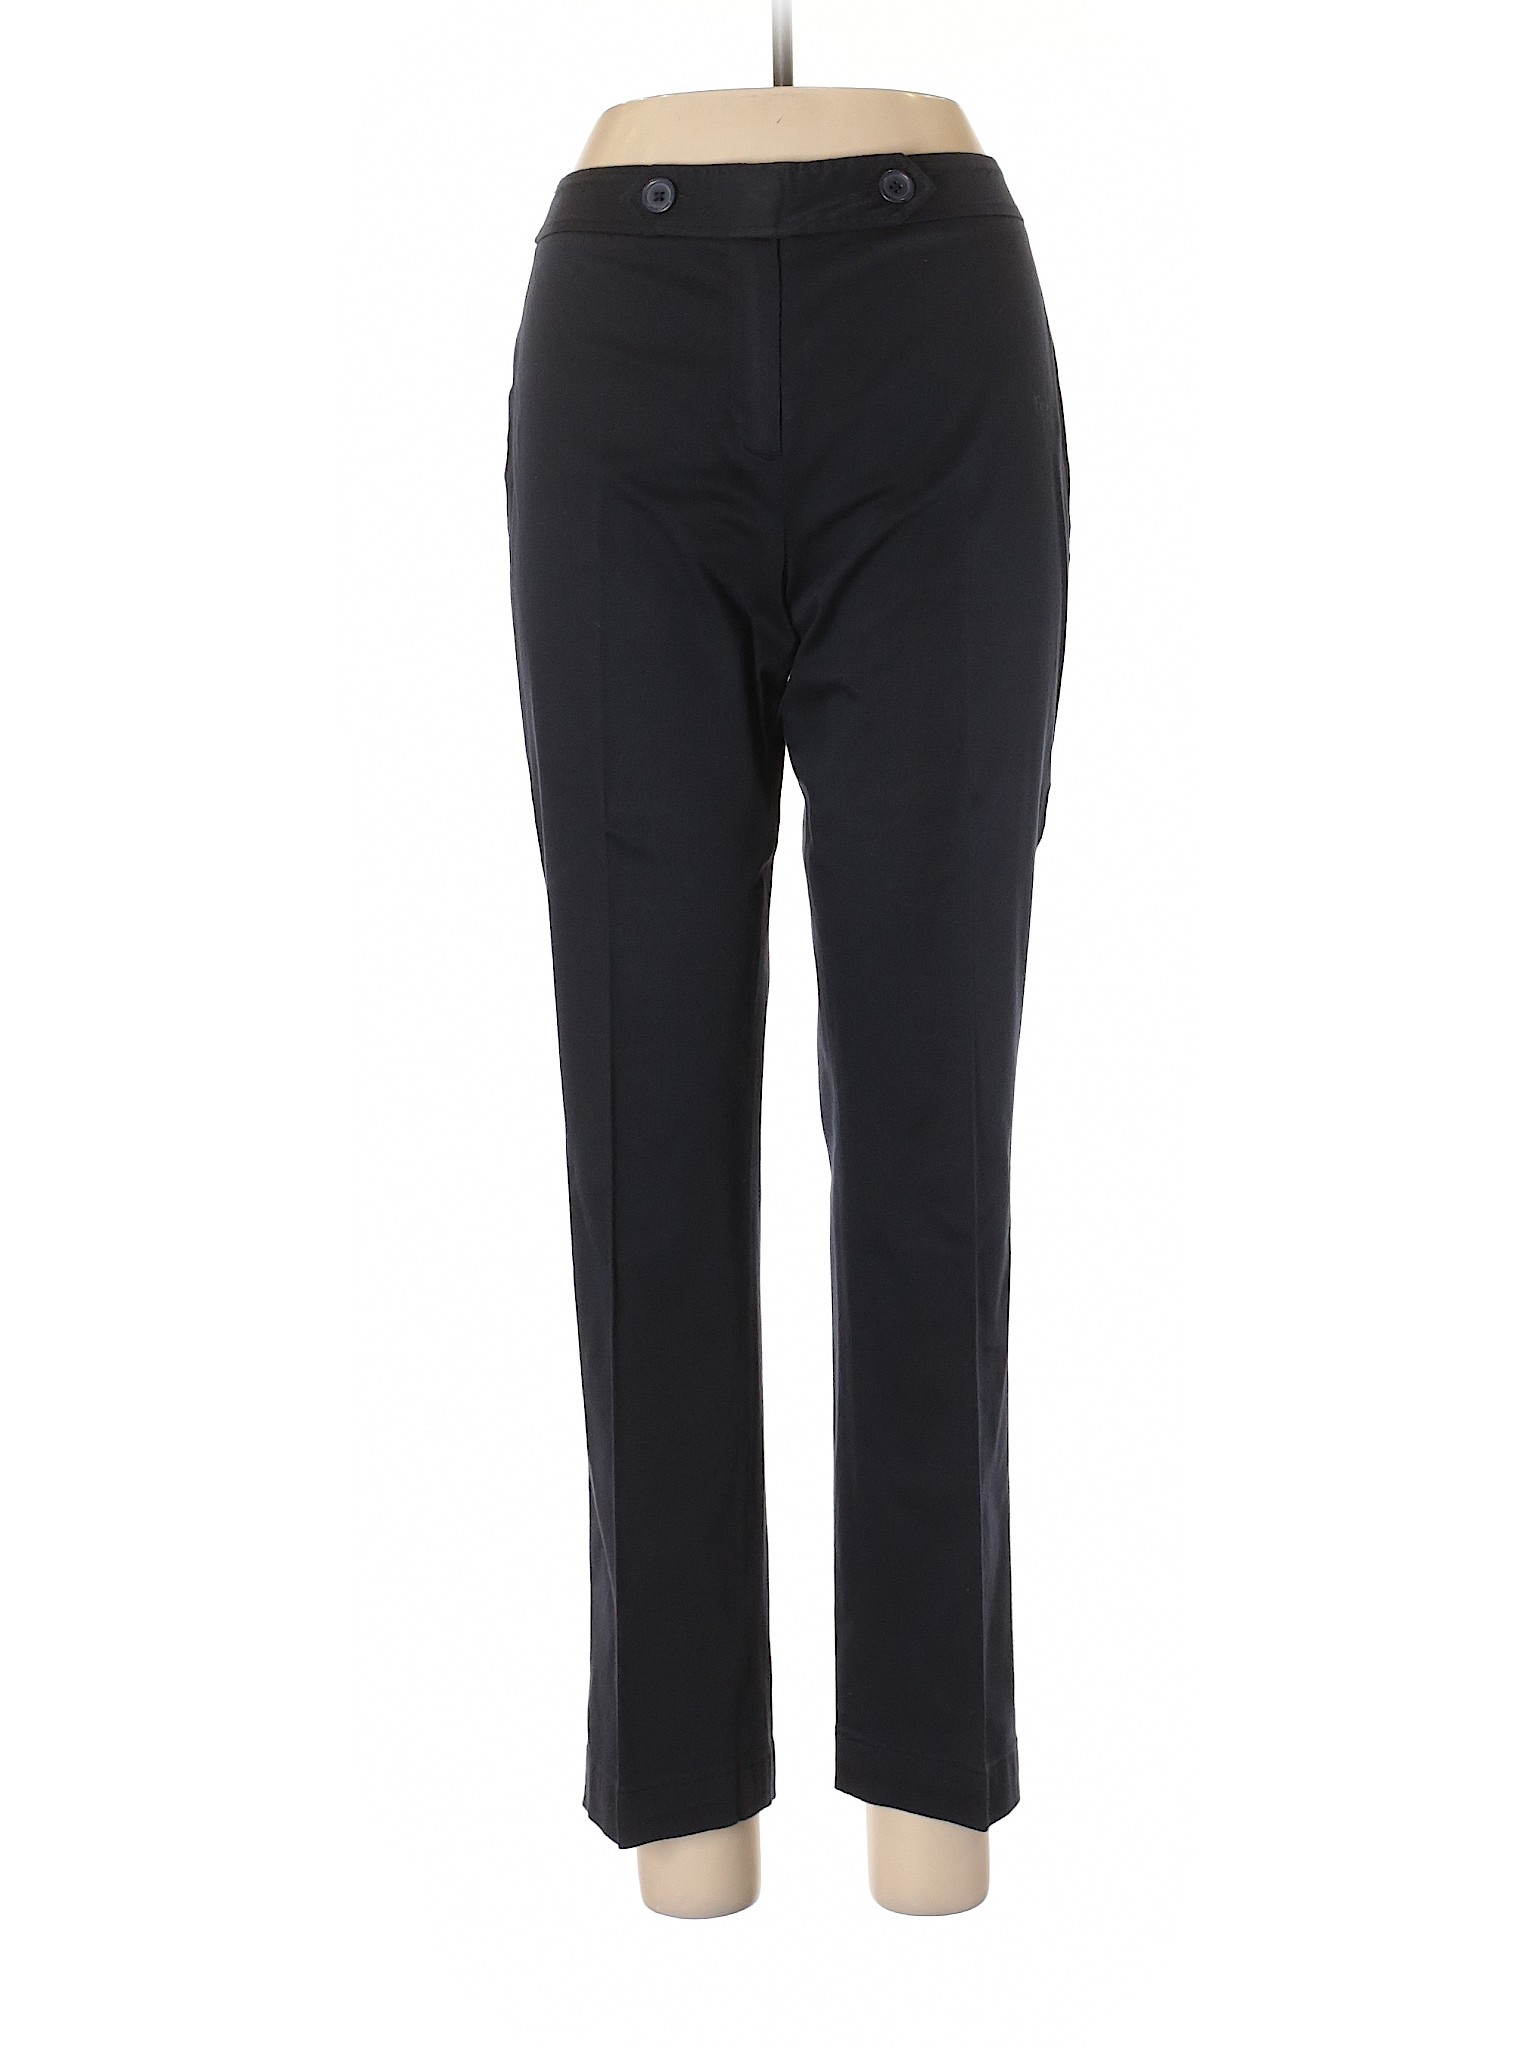 Ann Taylor LOFT Women Black Dress Pants 6 | eBay